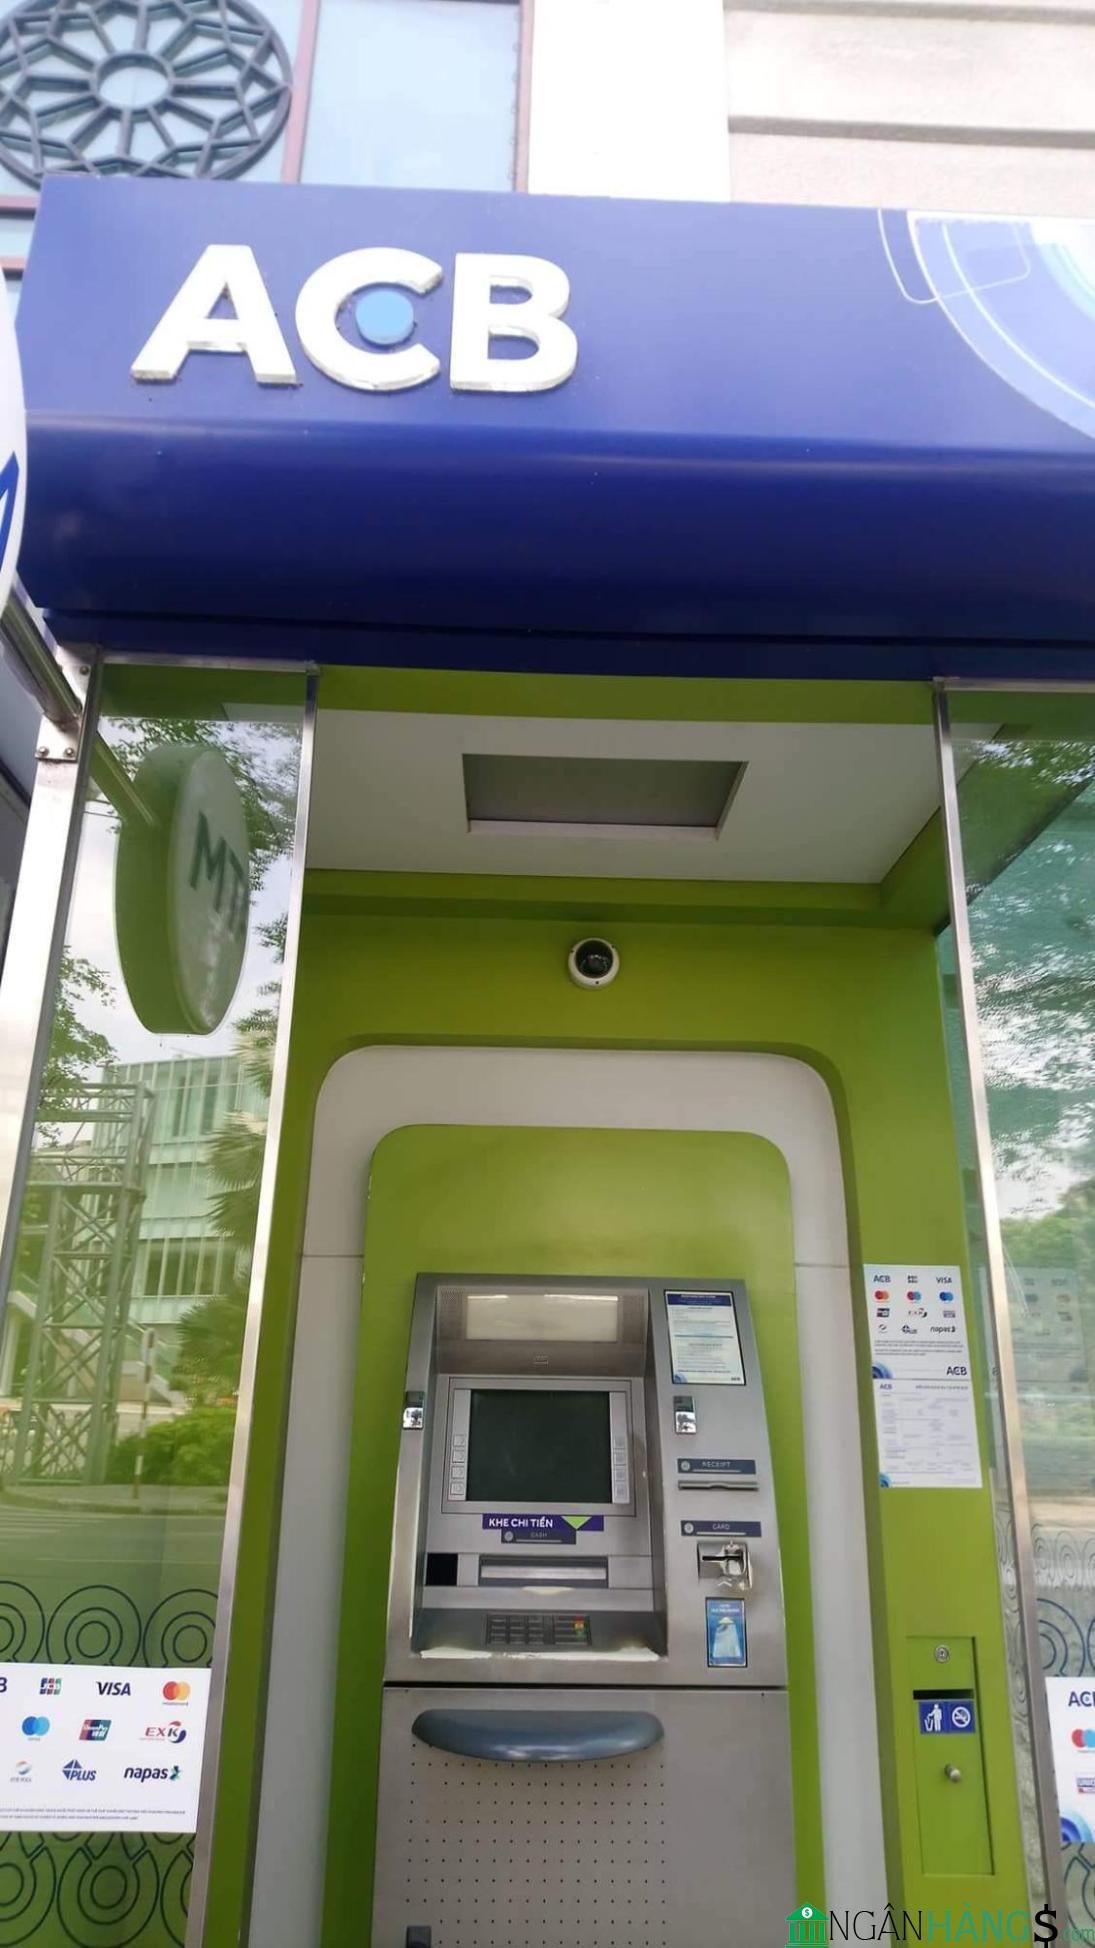 Ảnh Cây ATM ngân hàng Á Châu ACB Bệnh viện 71 Trung Ương 1